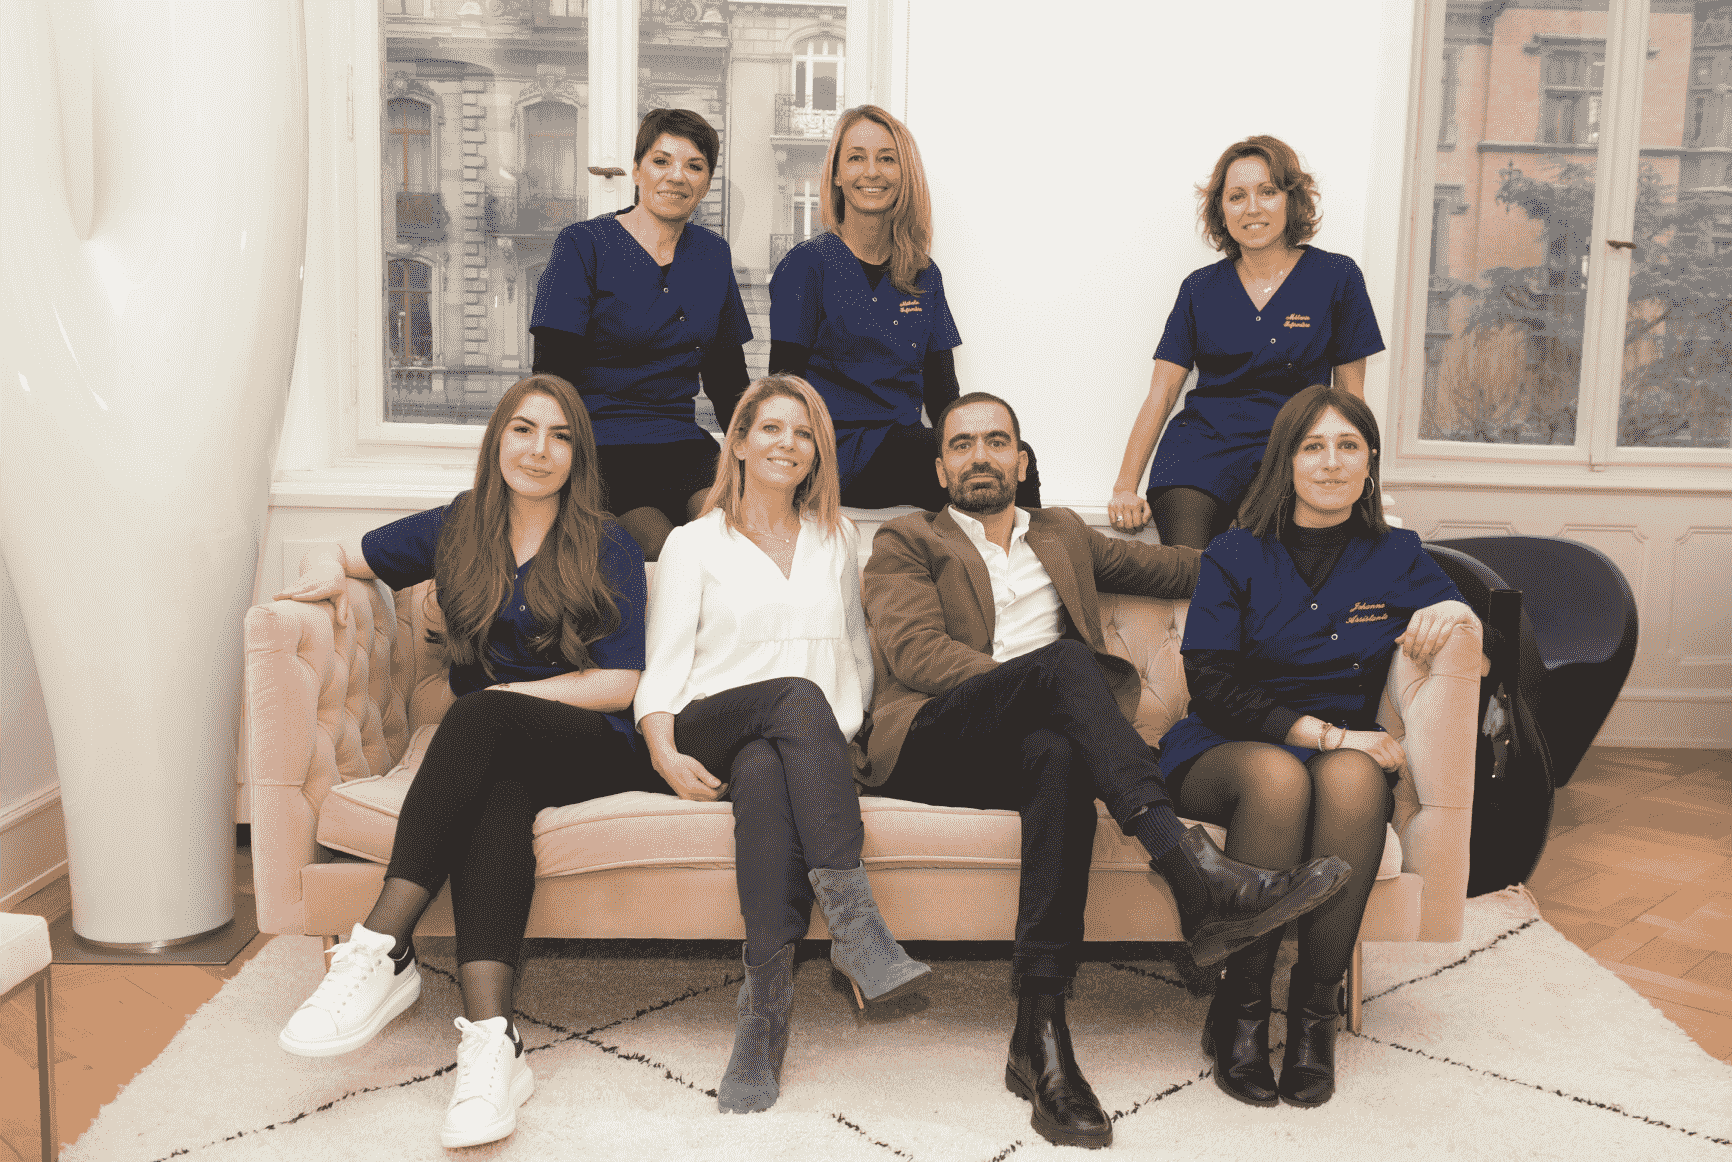 L'équipe : cabinet esthétique | Chirurgie esthétique | Drs Bollecker et Himy | Strasbourg